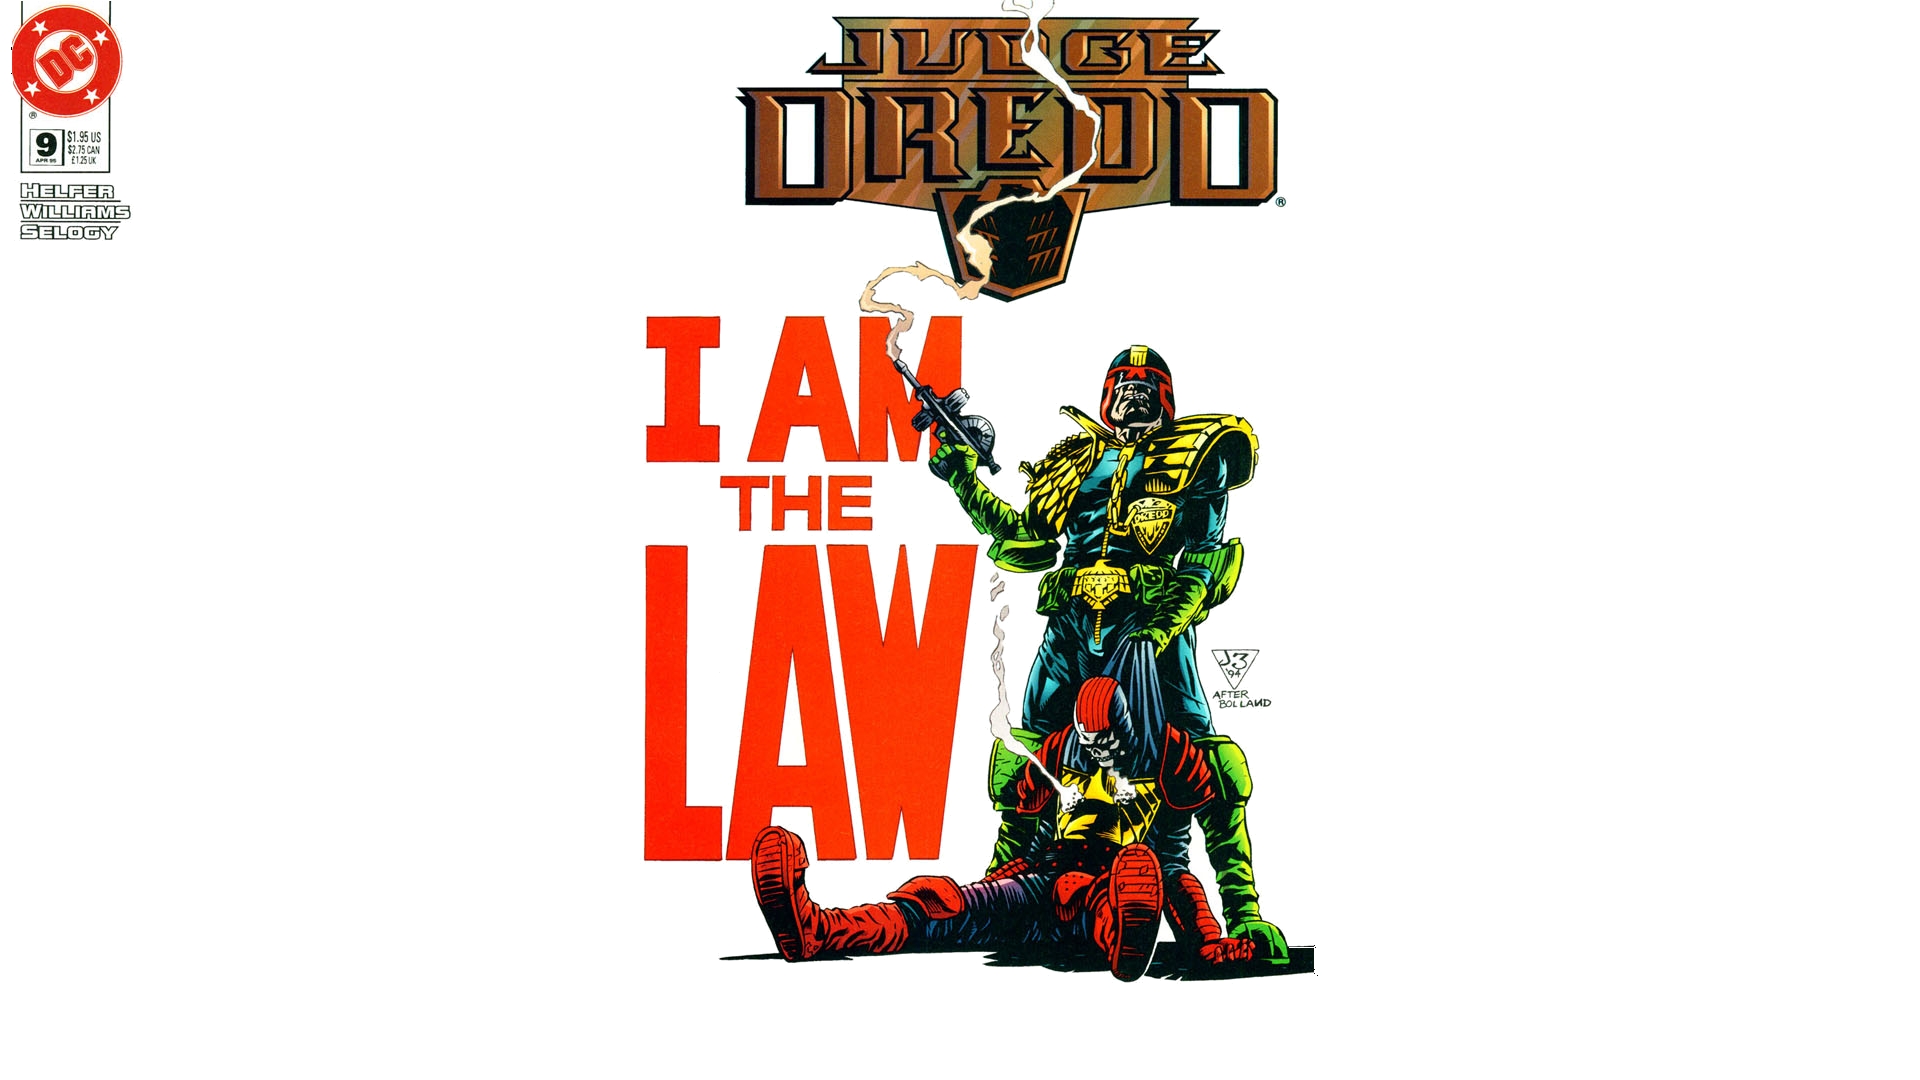 Dredd Judge Dredd 1920x1080